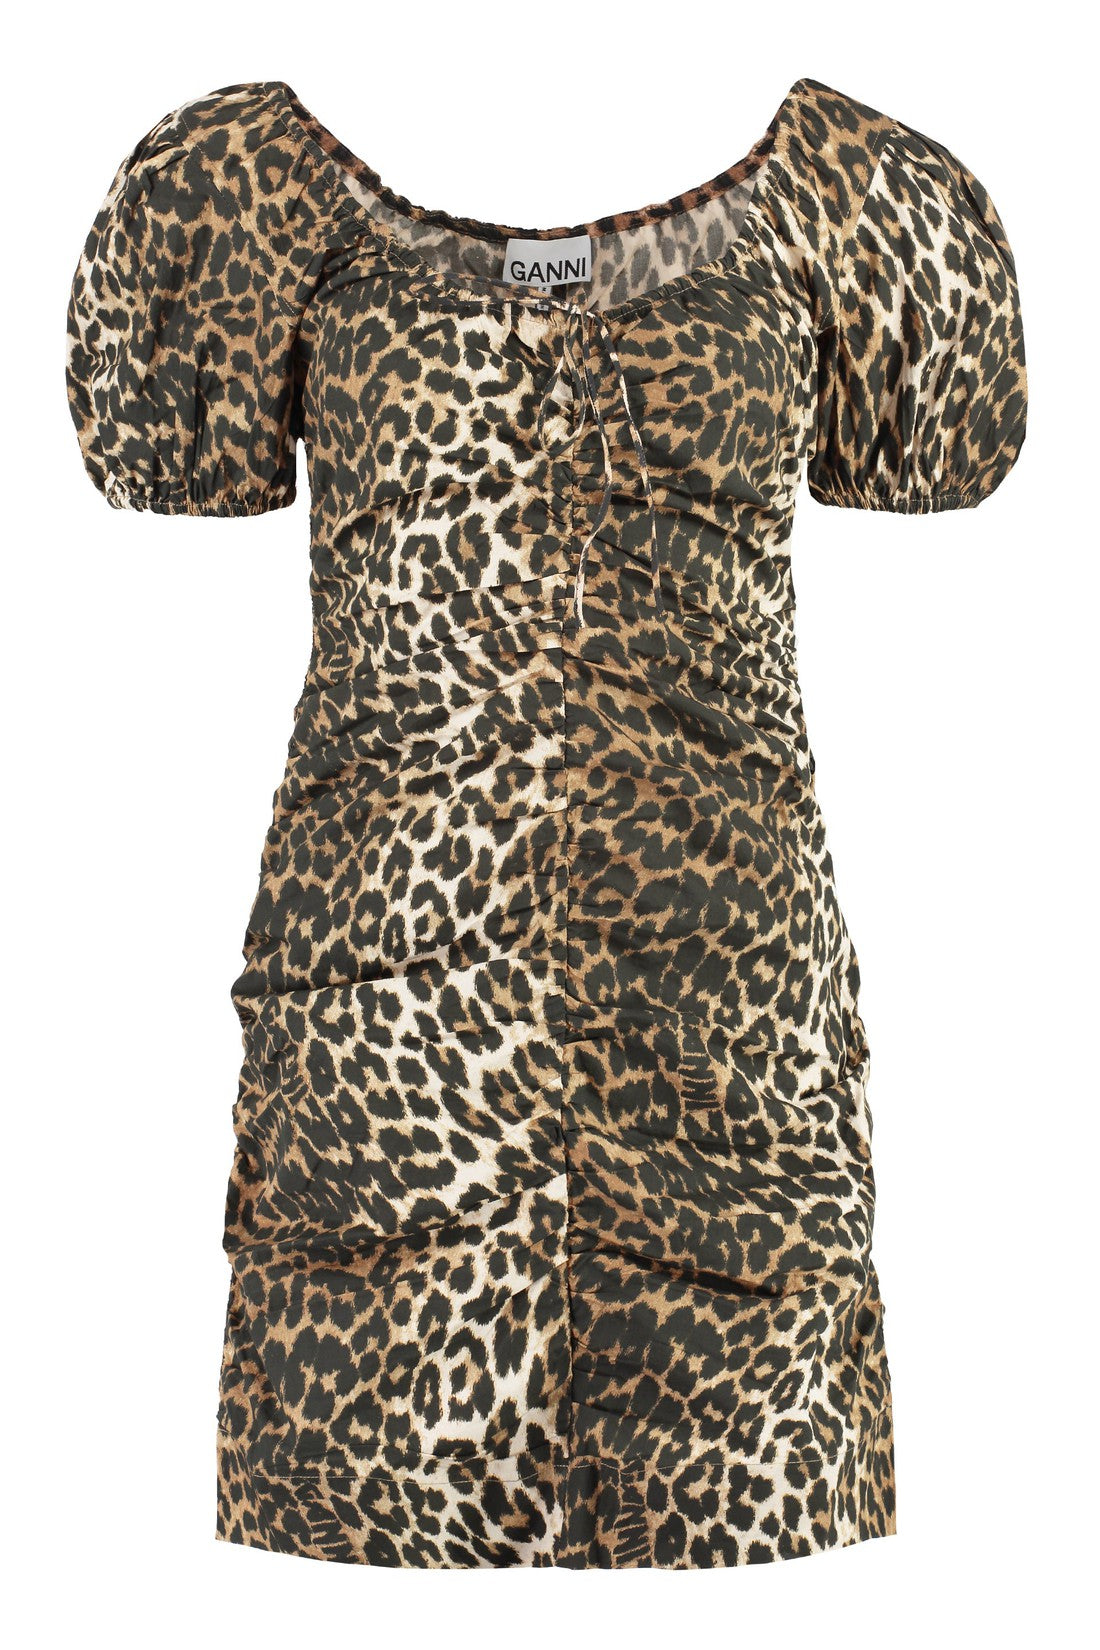 GANNI-OUTLET-SALE-Leopard mini dress-ARCHIVIST